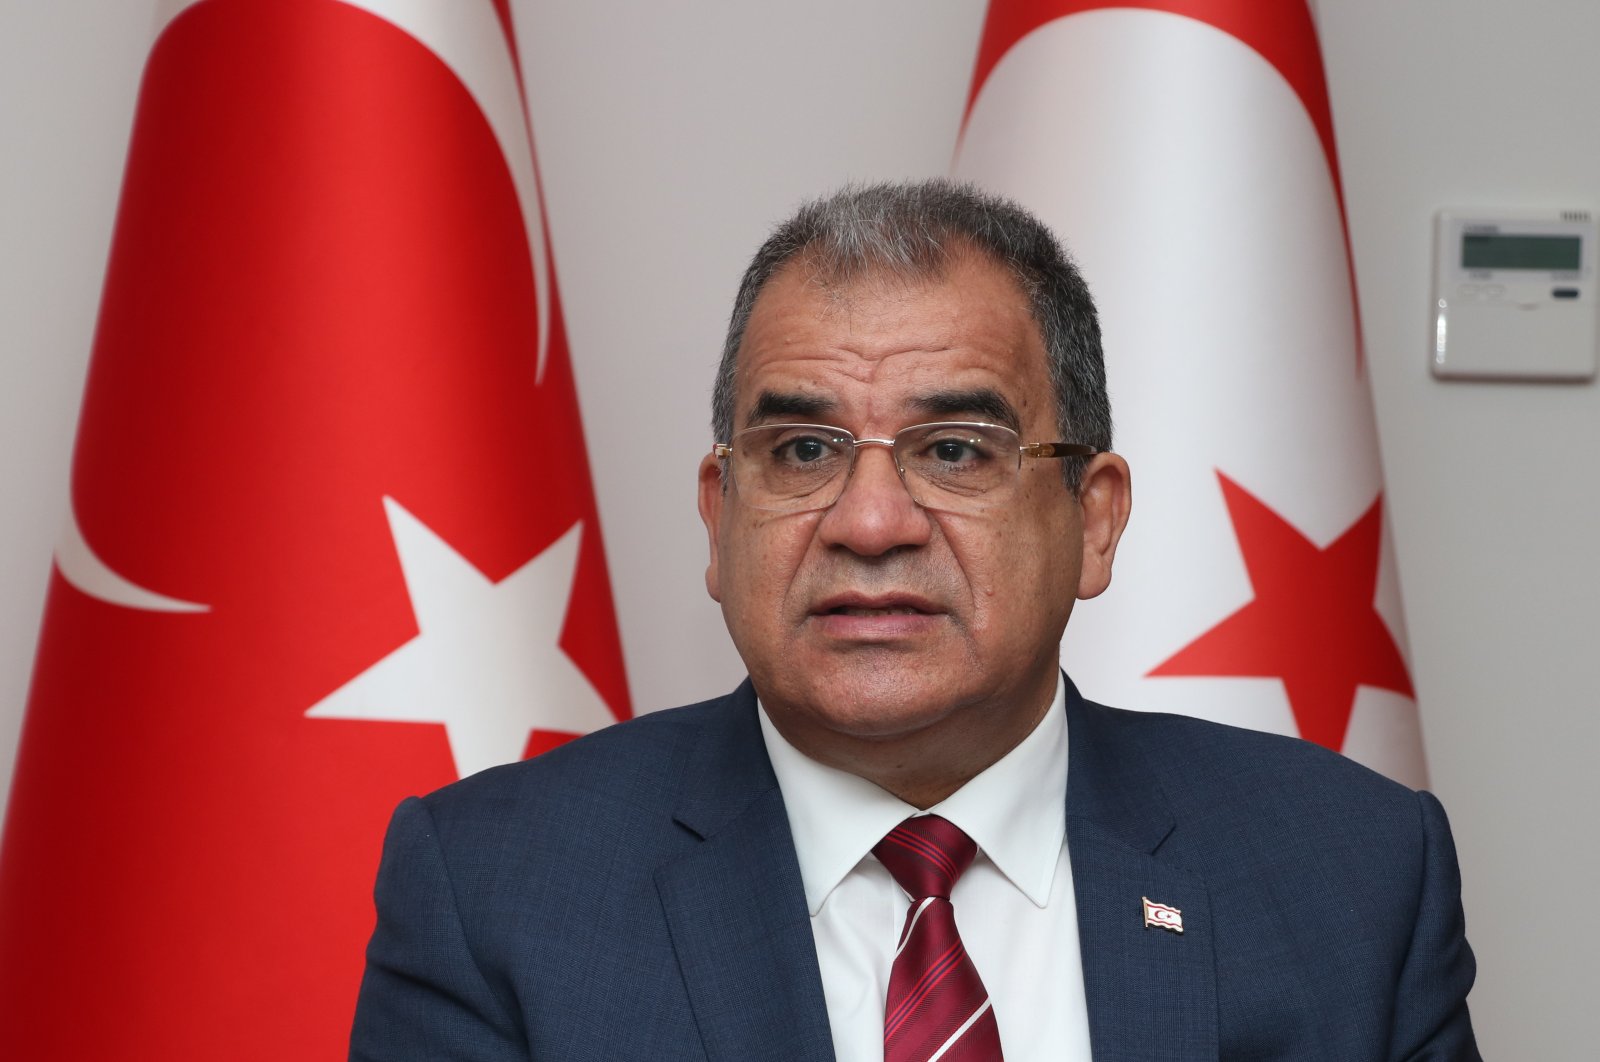 Dukungan AS untuk pipa EastMed adalah kebodohan: PM Siprus Turki